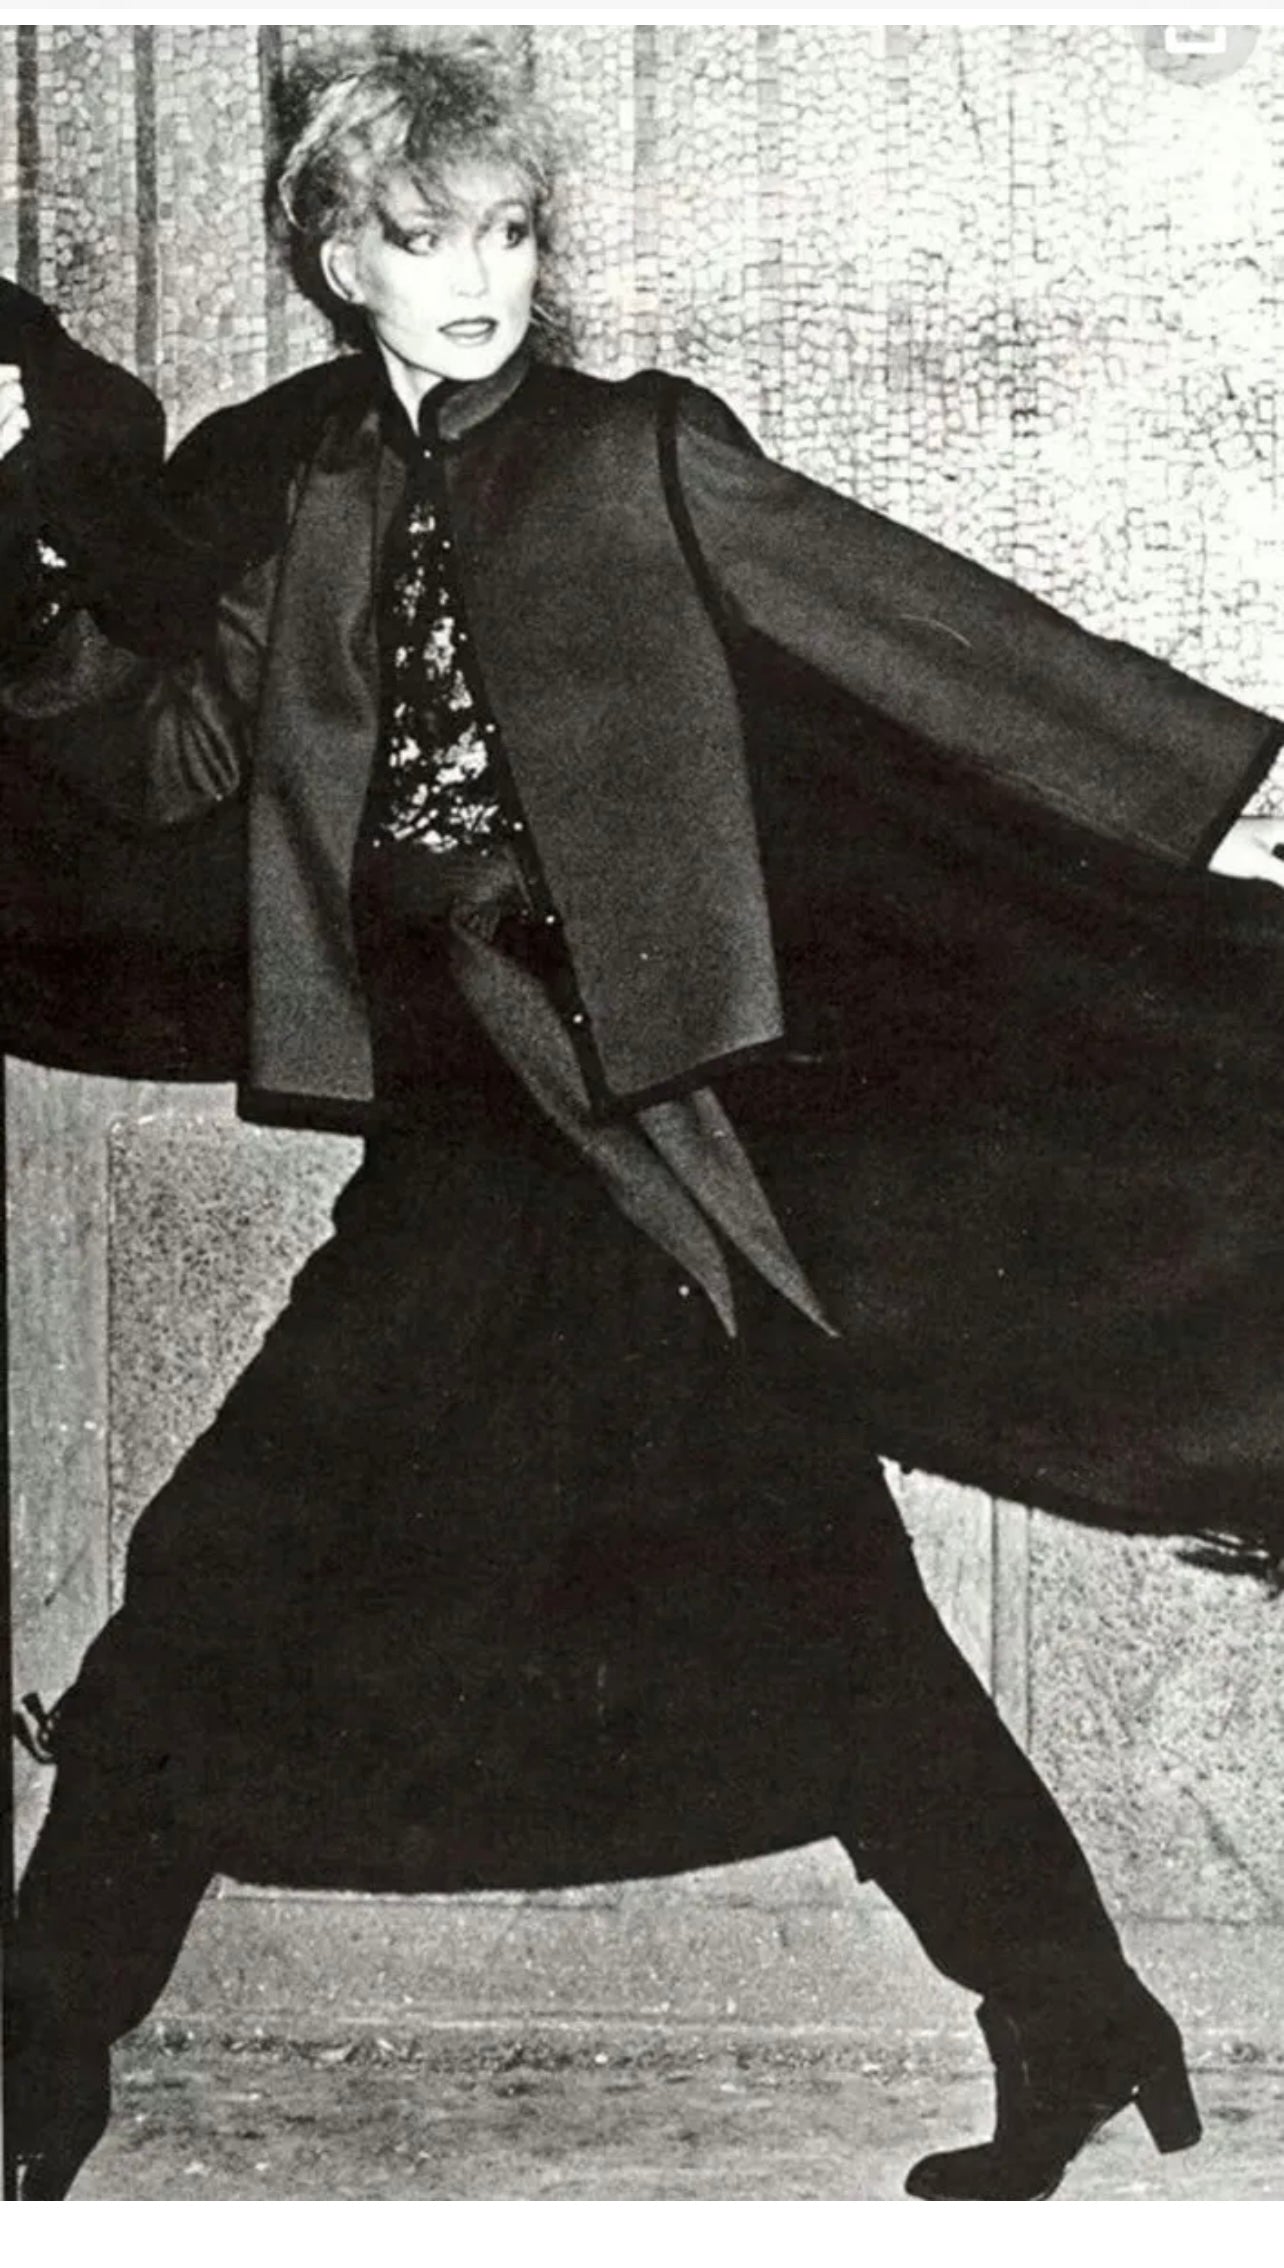 Vintage Yves Saint Laurent Velvet Skirt in Black - SHOP EZRA